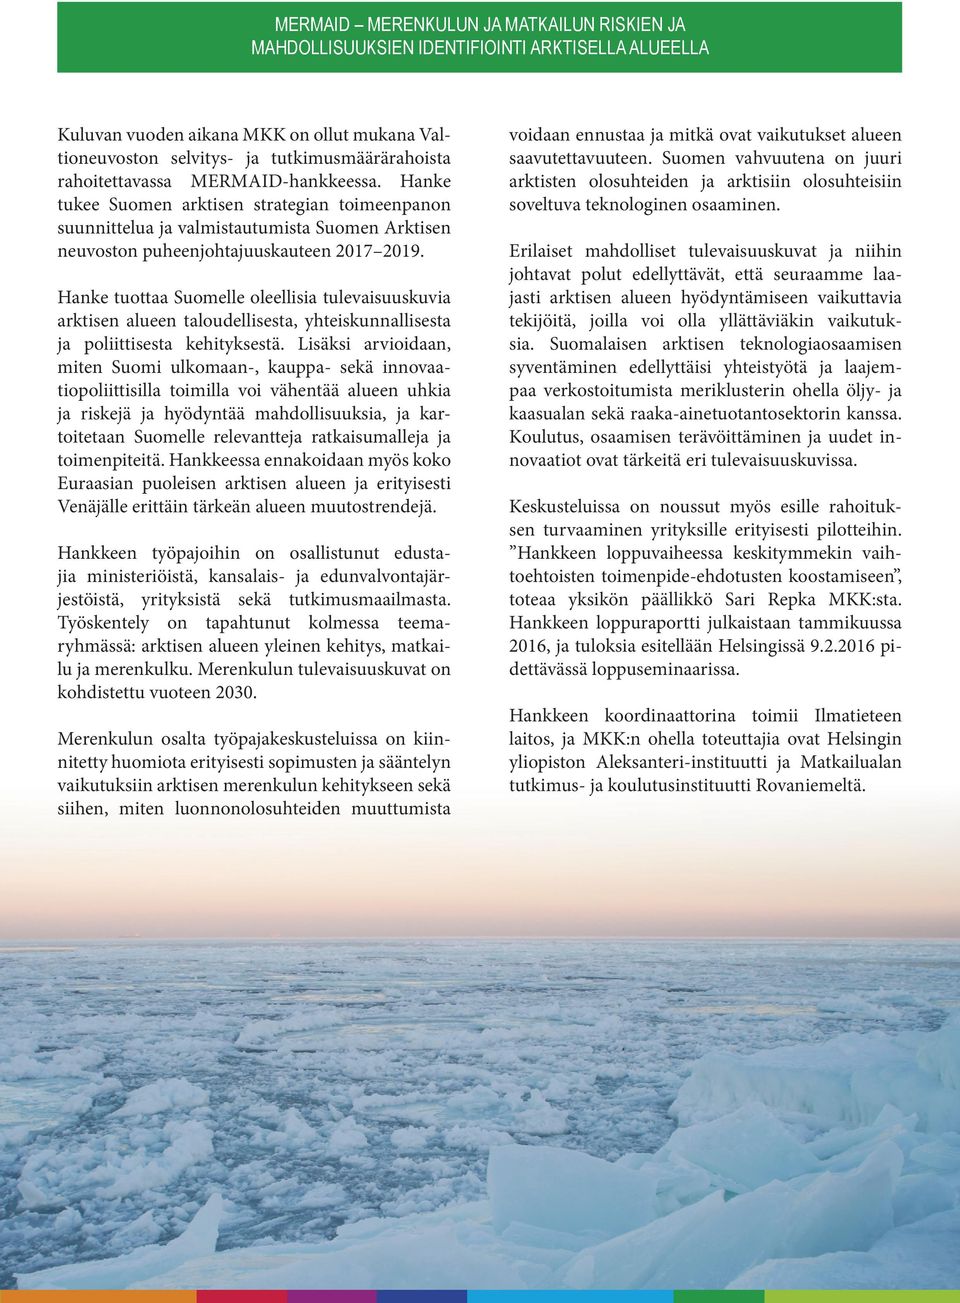 Hanke tuottaa Suomelle oleellisia tulevaisuuskuvia arktisen alueen taloudellisesta, yhteiskunnallisesta ja poliittisesta kehityksestä.